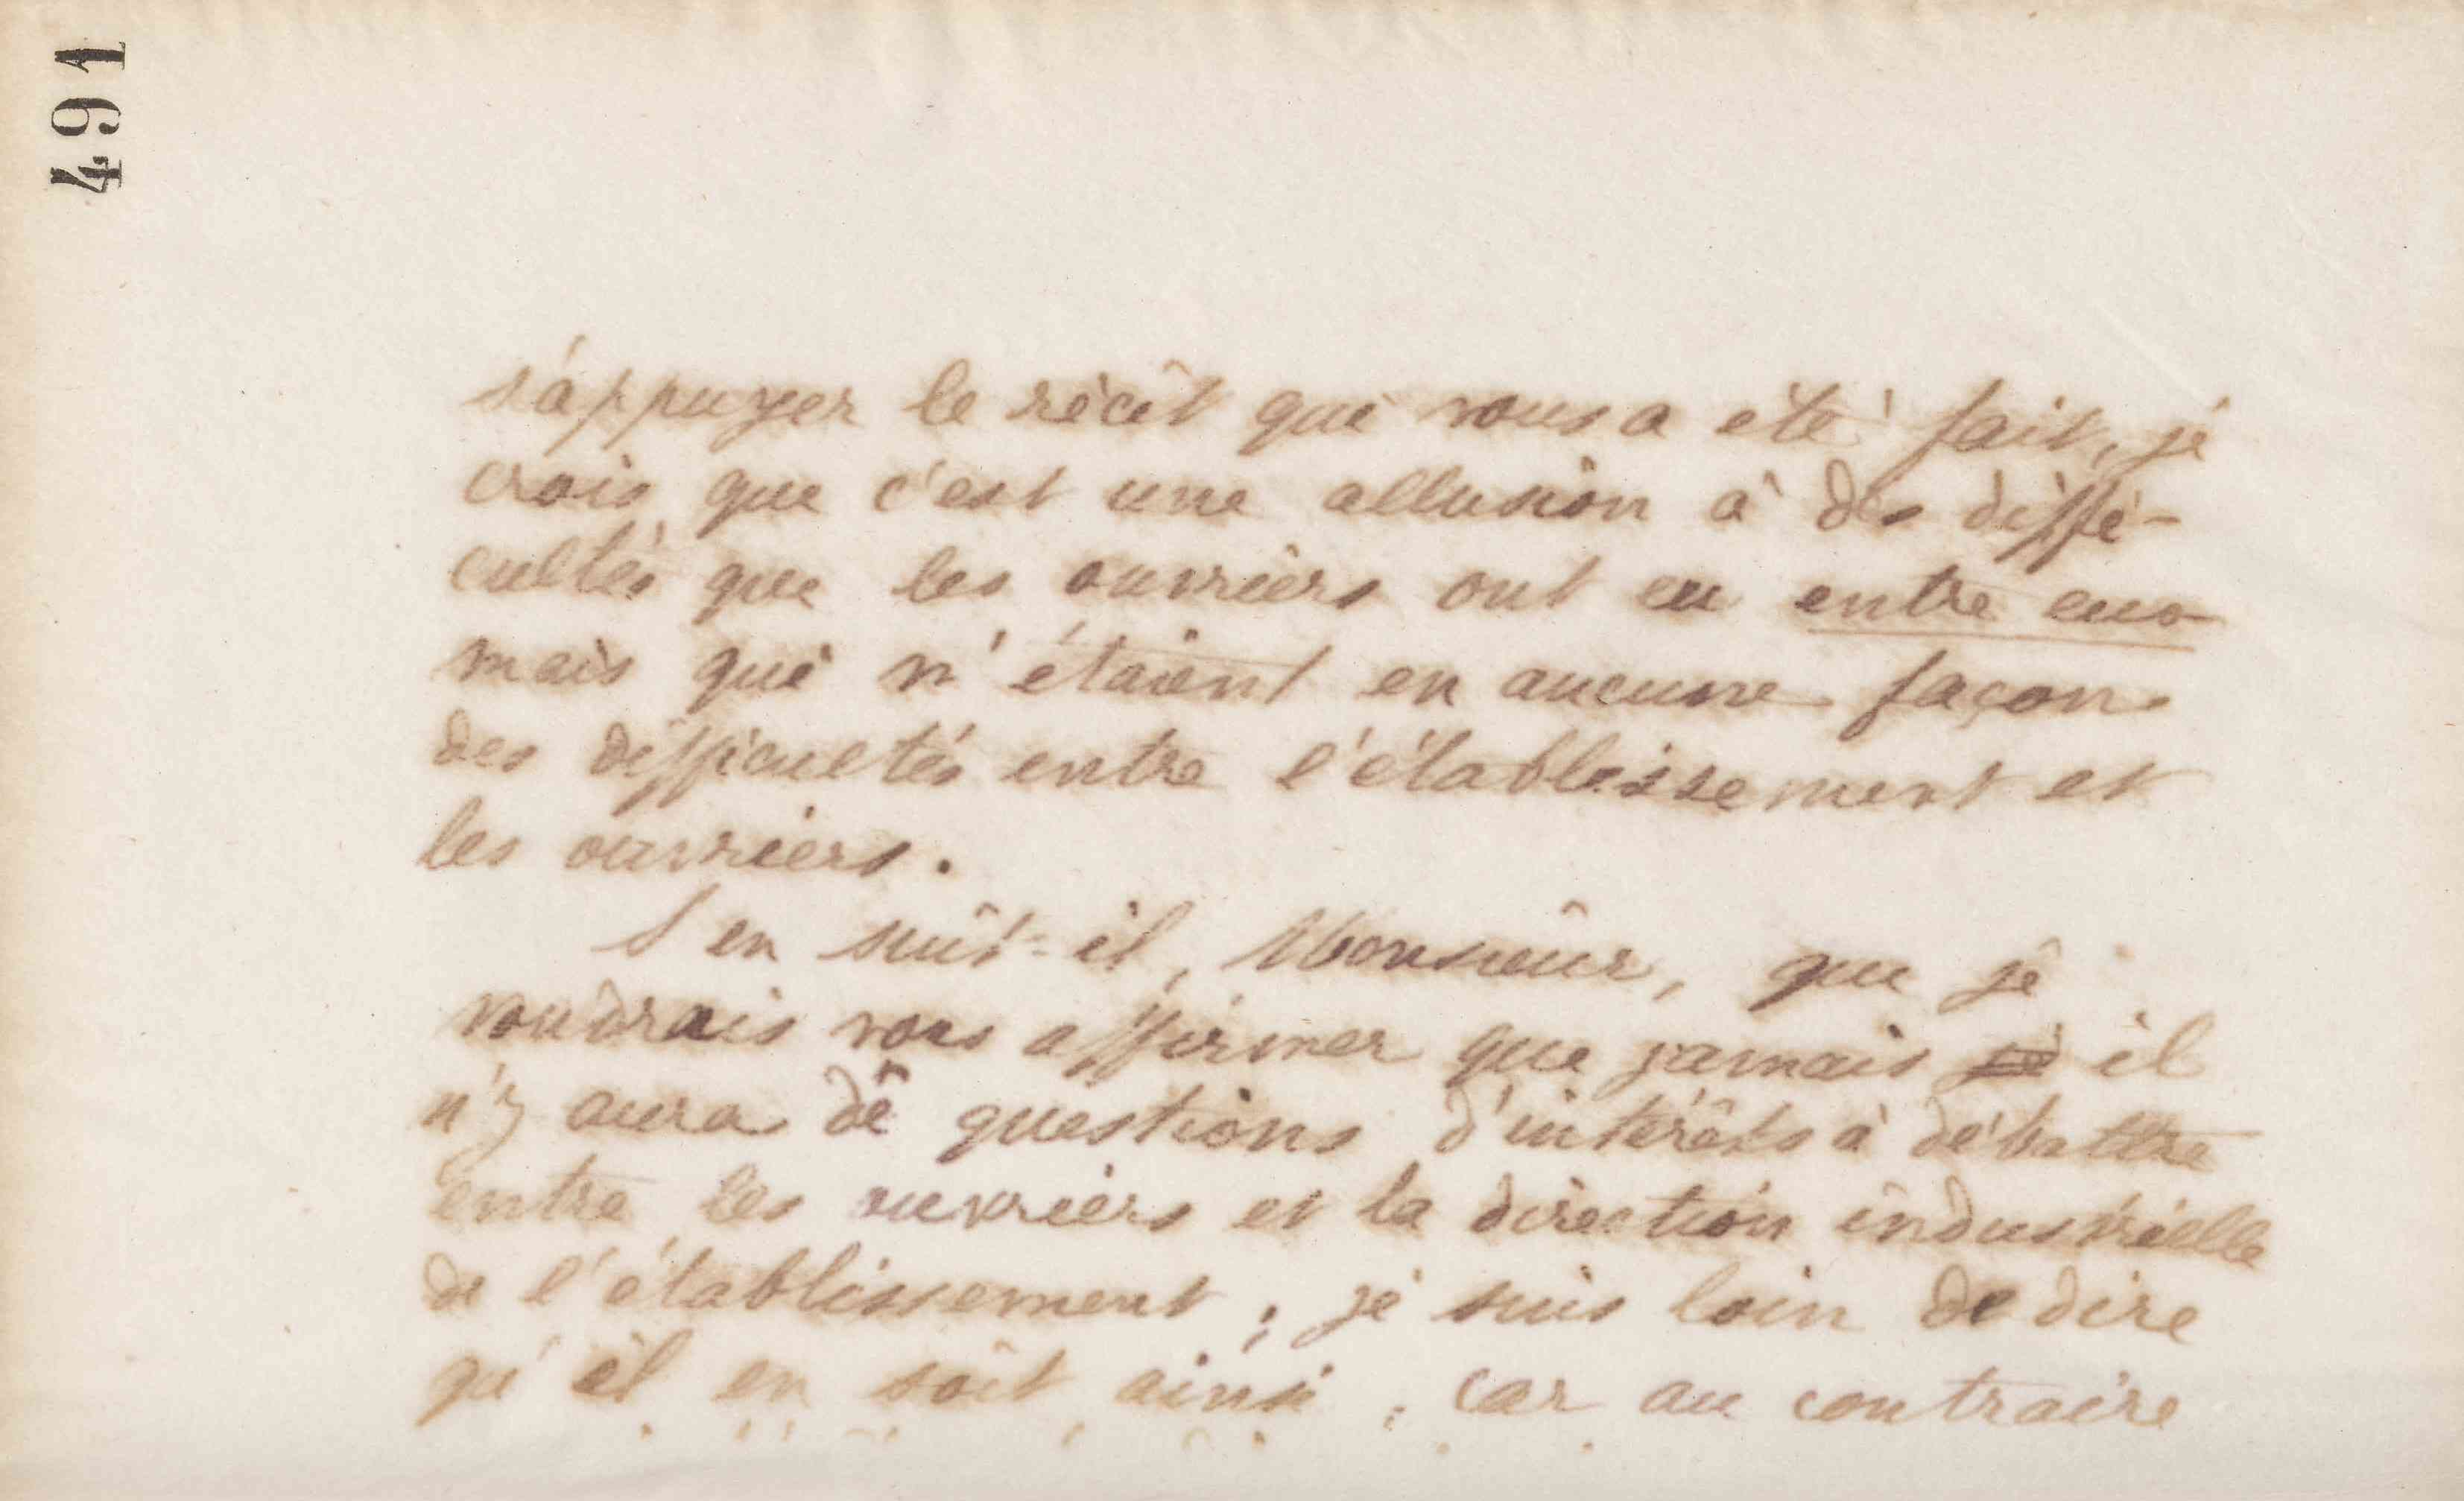 Jean-Baptiste André Godin à Alexandre Beretti, 12 janvier 1873